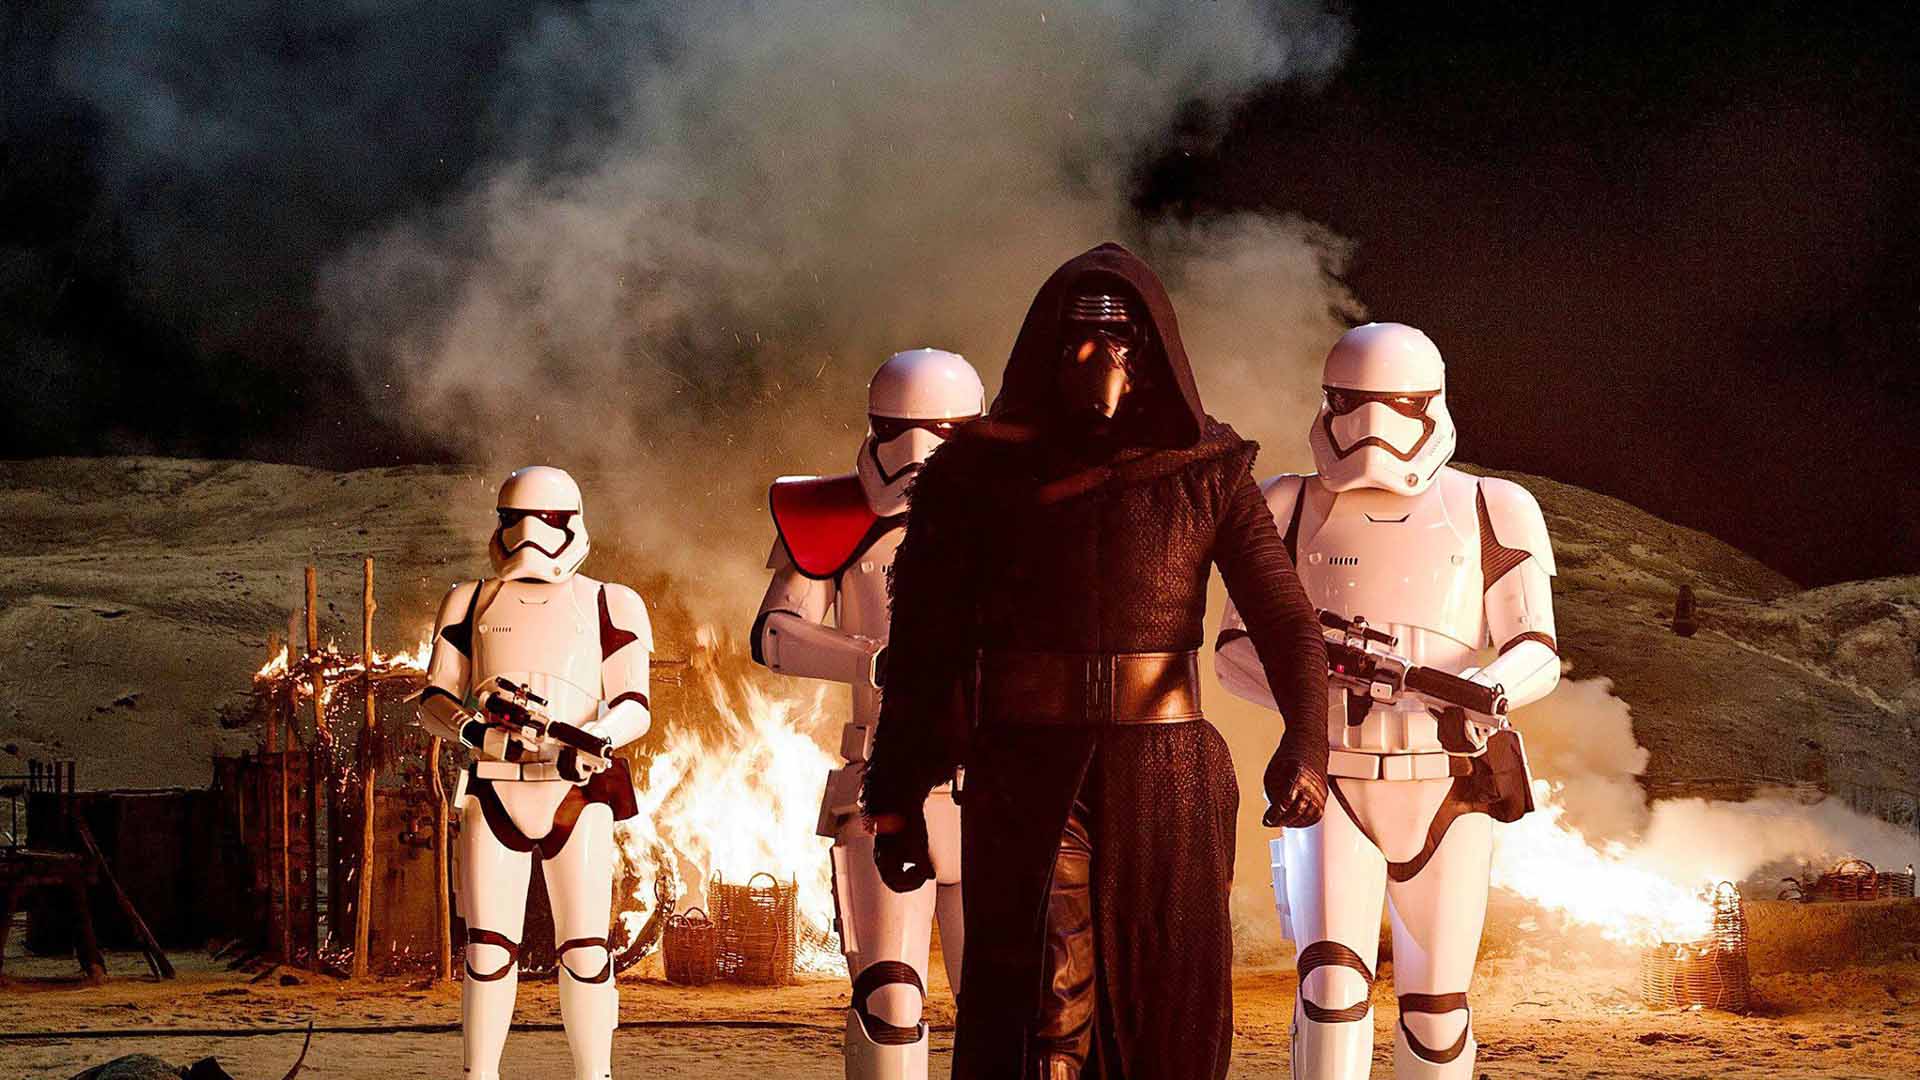 La última entrega de Star Wars se estrenará en el segundo mercado mundial cinematográfico en enero de 2016